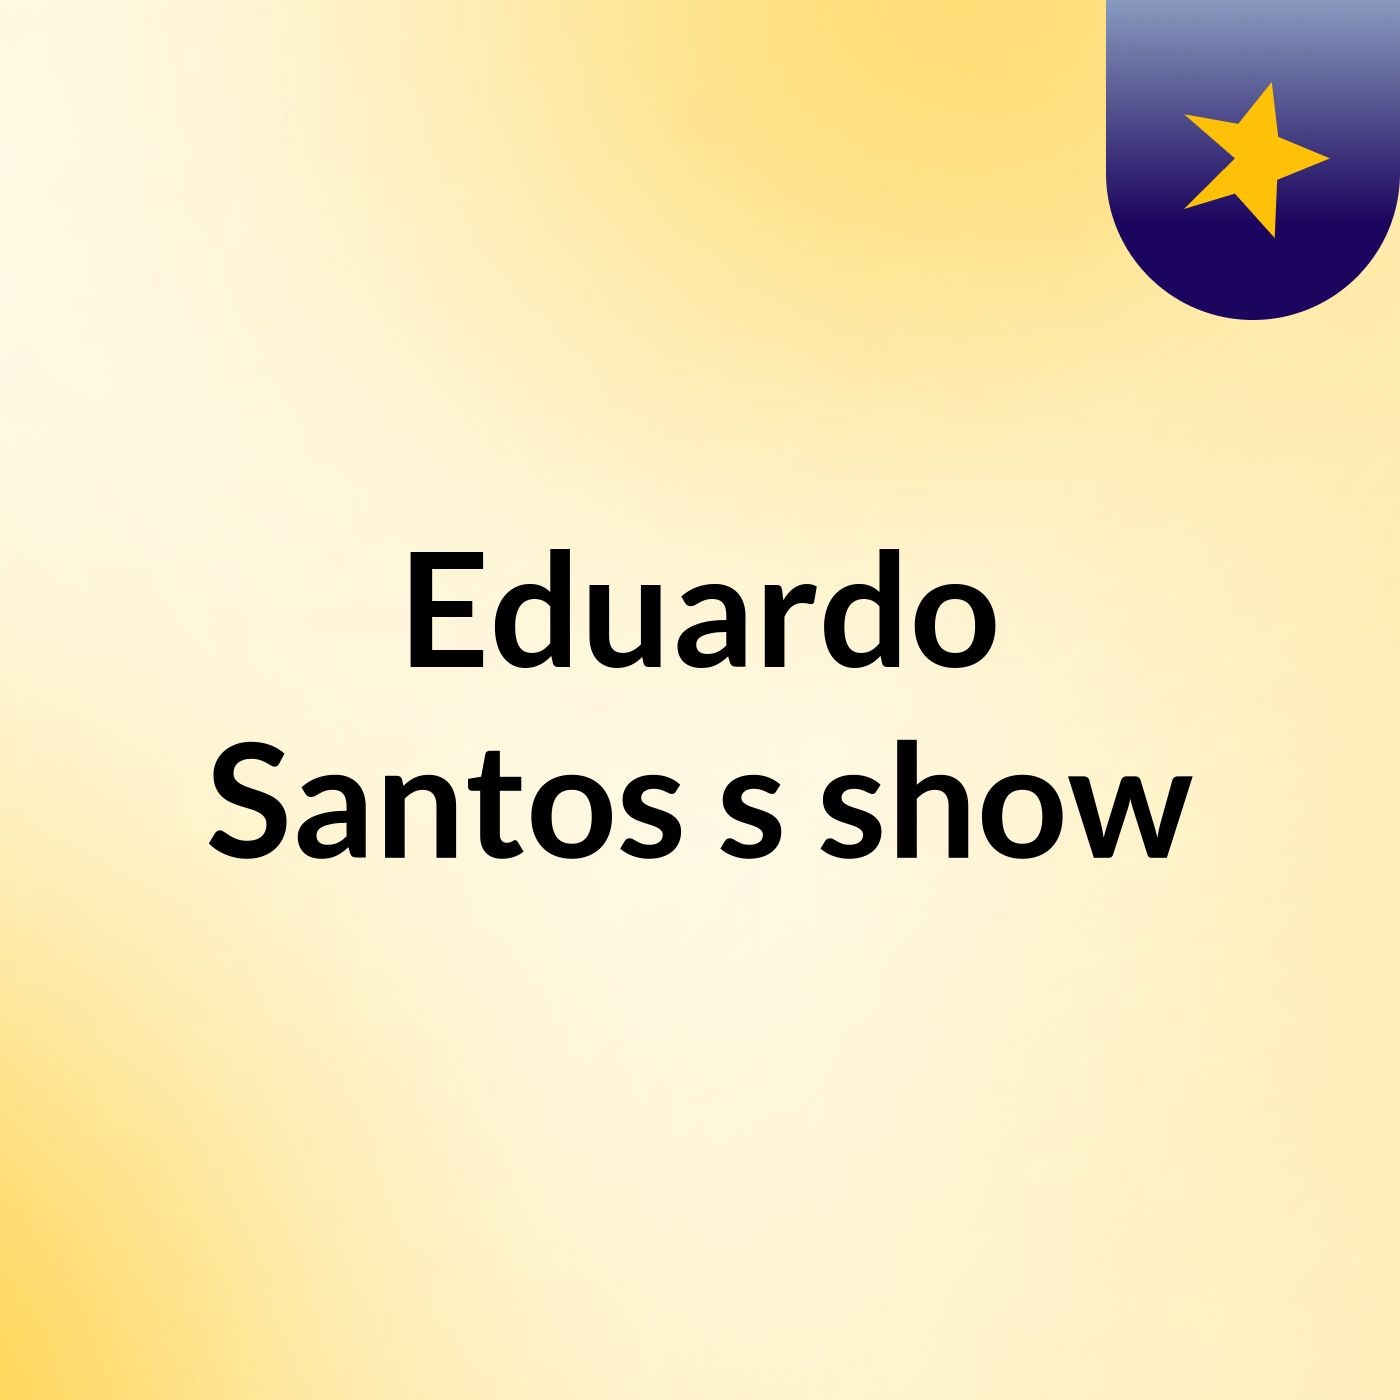 Episódio 19 - Eduardo Santos's show